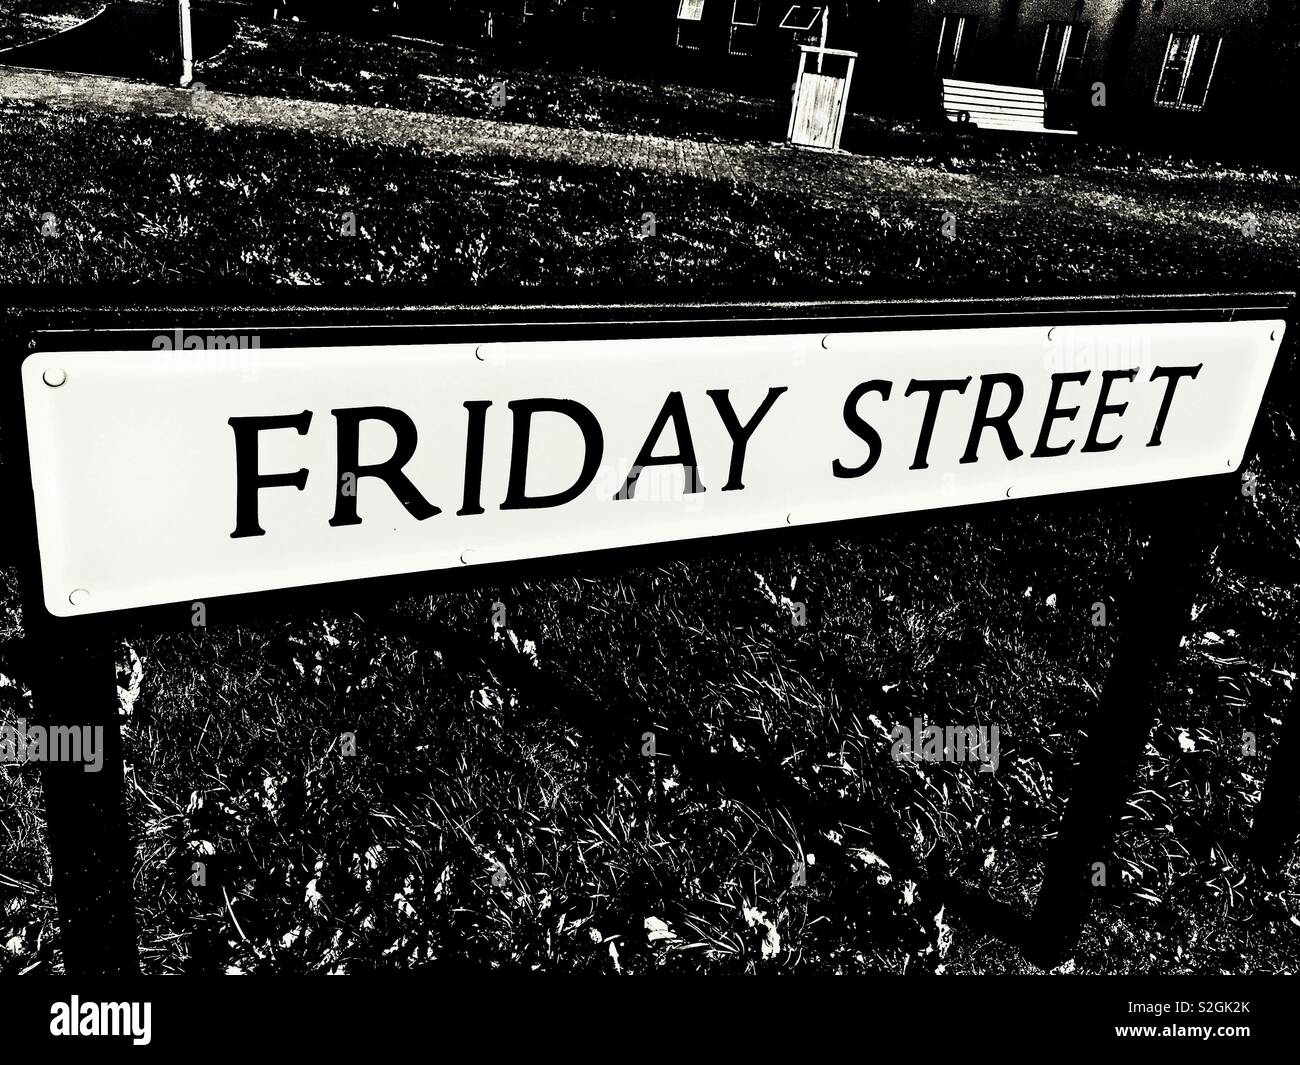 Le rendu en noir et blanc d'un panneau indicateur de la route, vendredi Street. Concept. Métaphore de la fin de la semaine. Le week-end est ici. Banque D'Images